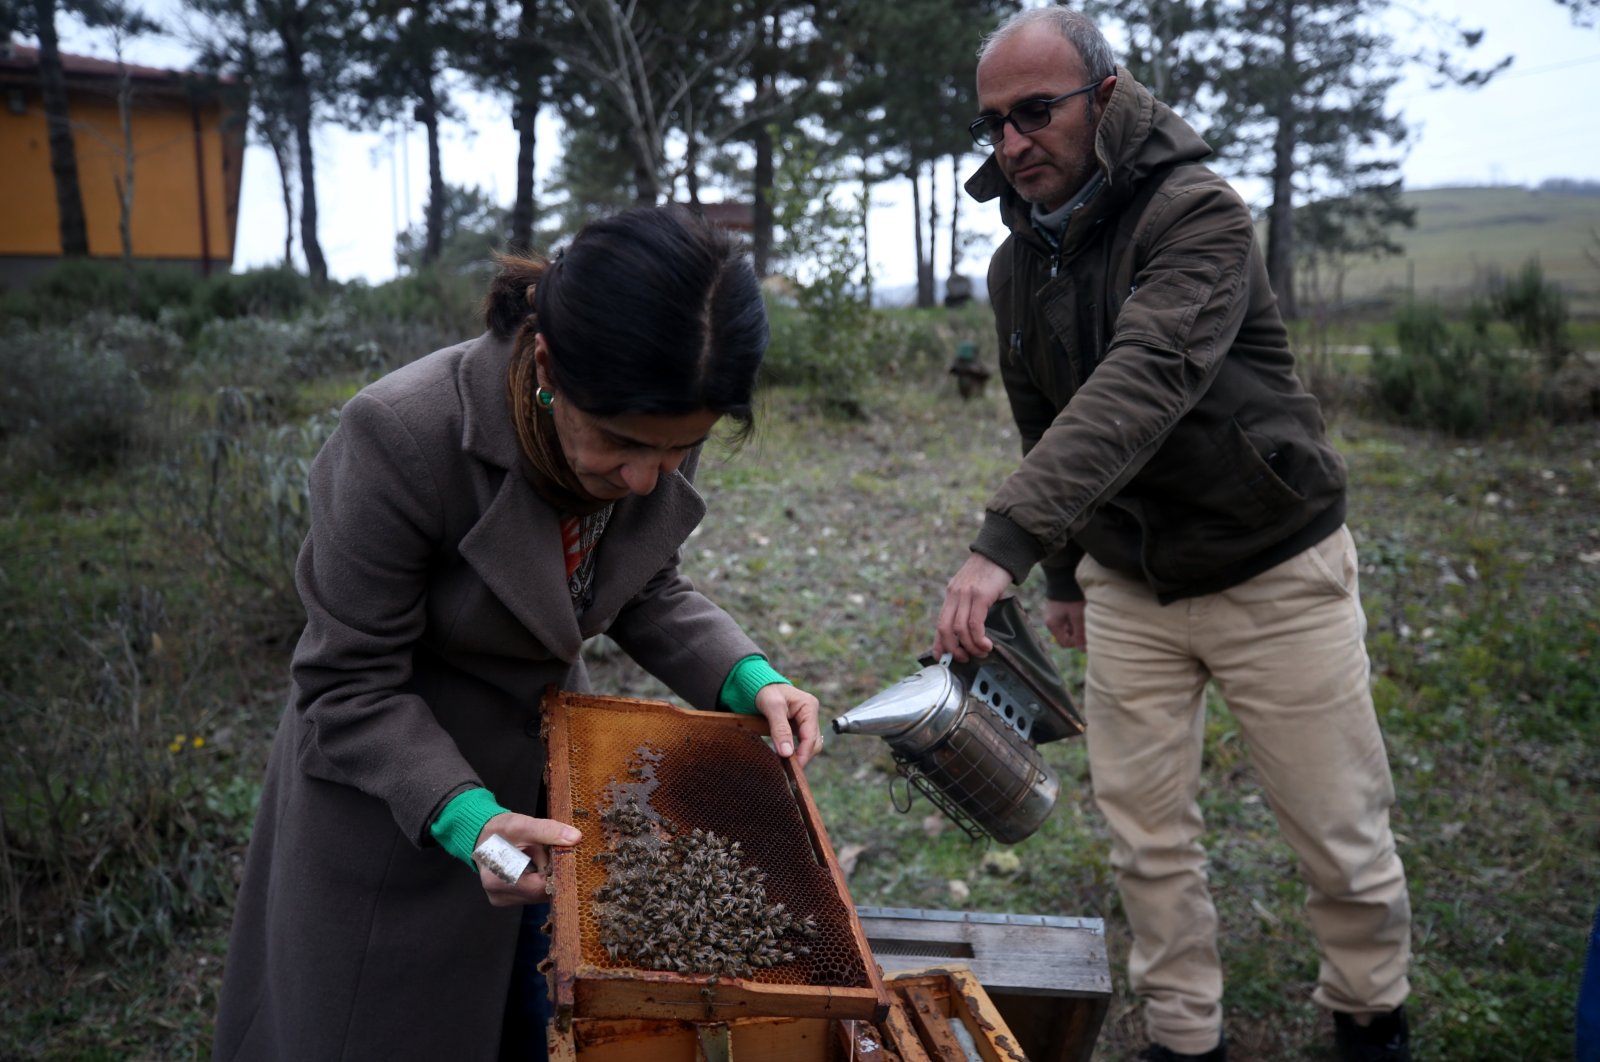 Jumlah lebah di Türkiye mungkin turun karena suhu yang tinggi di luar musimnya